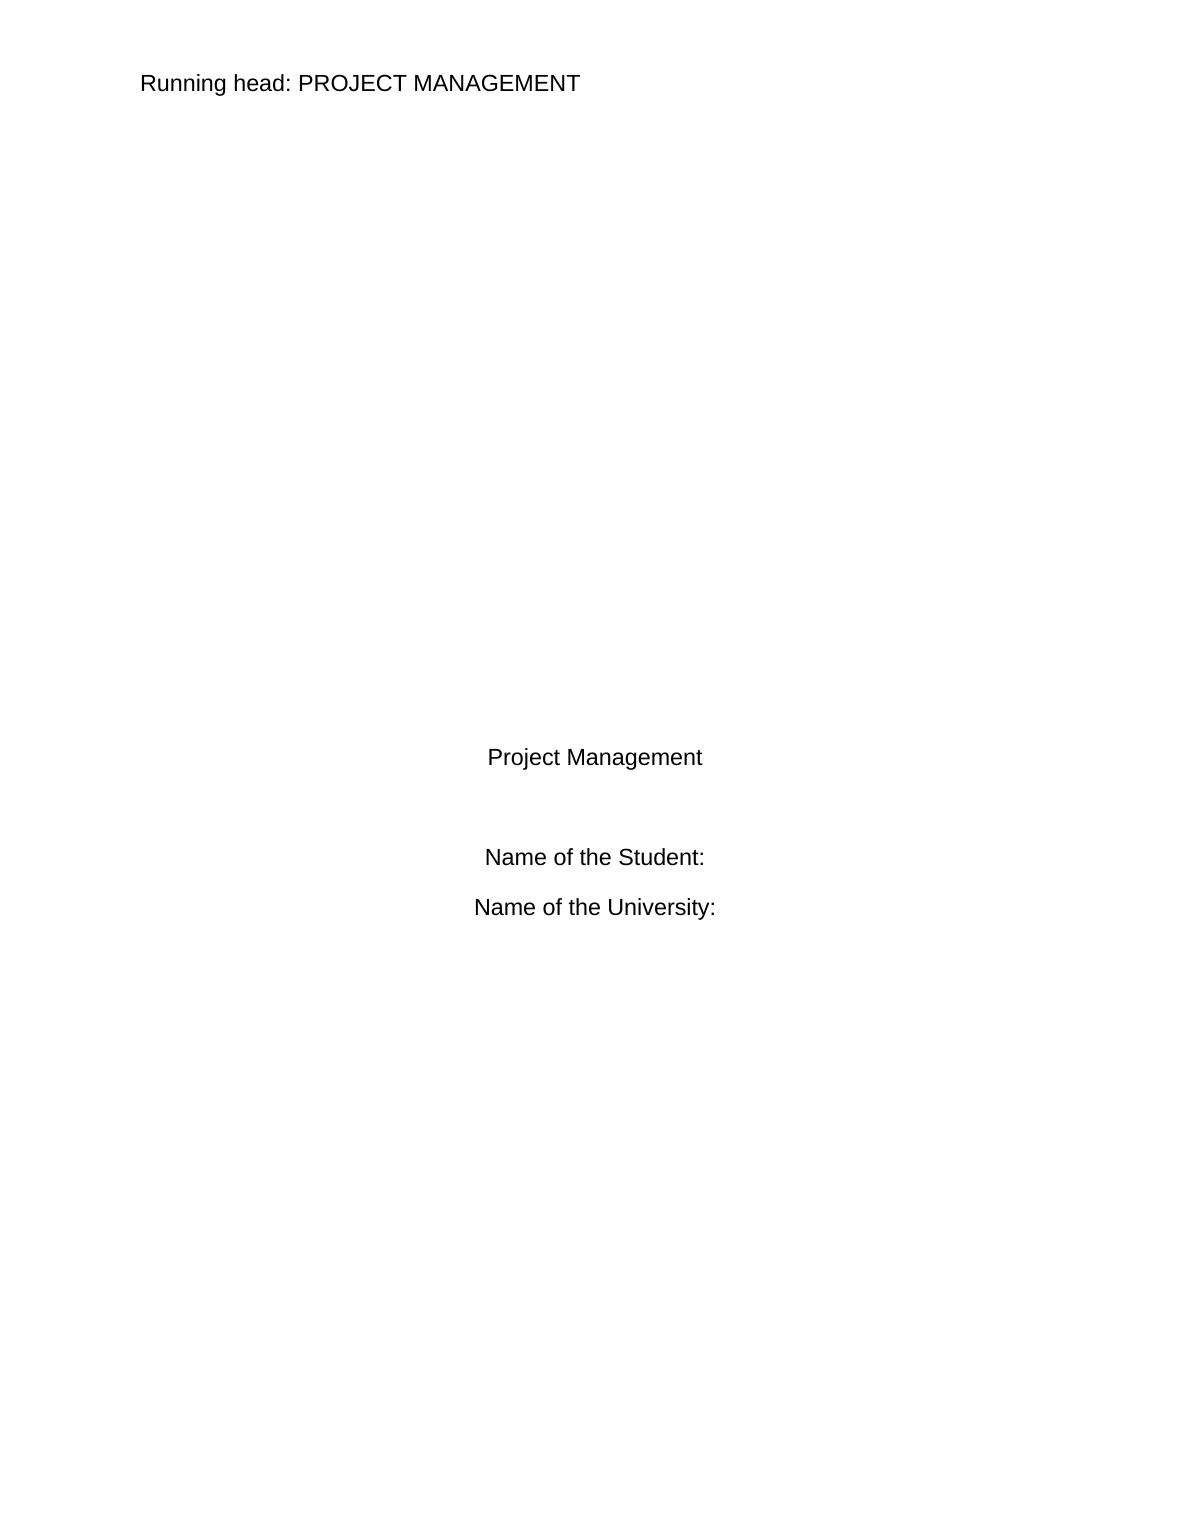 Project Management_1